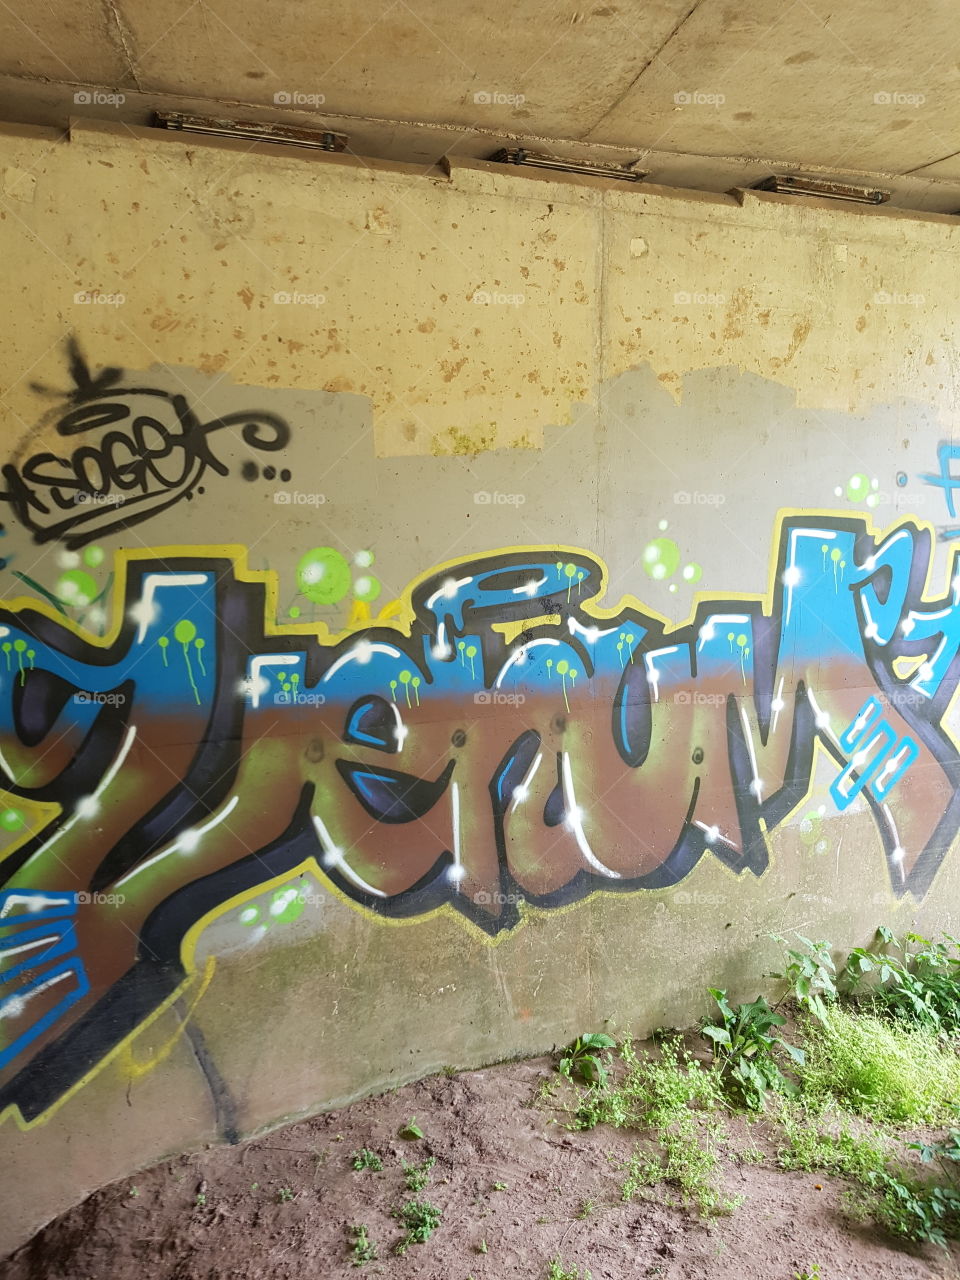 more graffiti